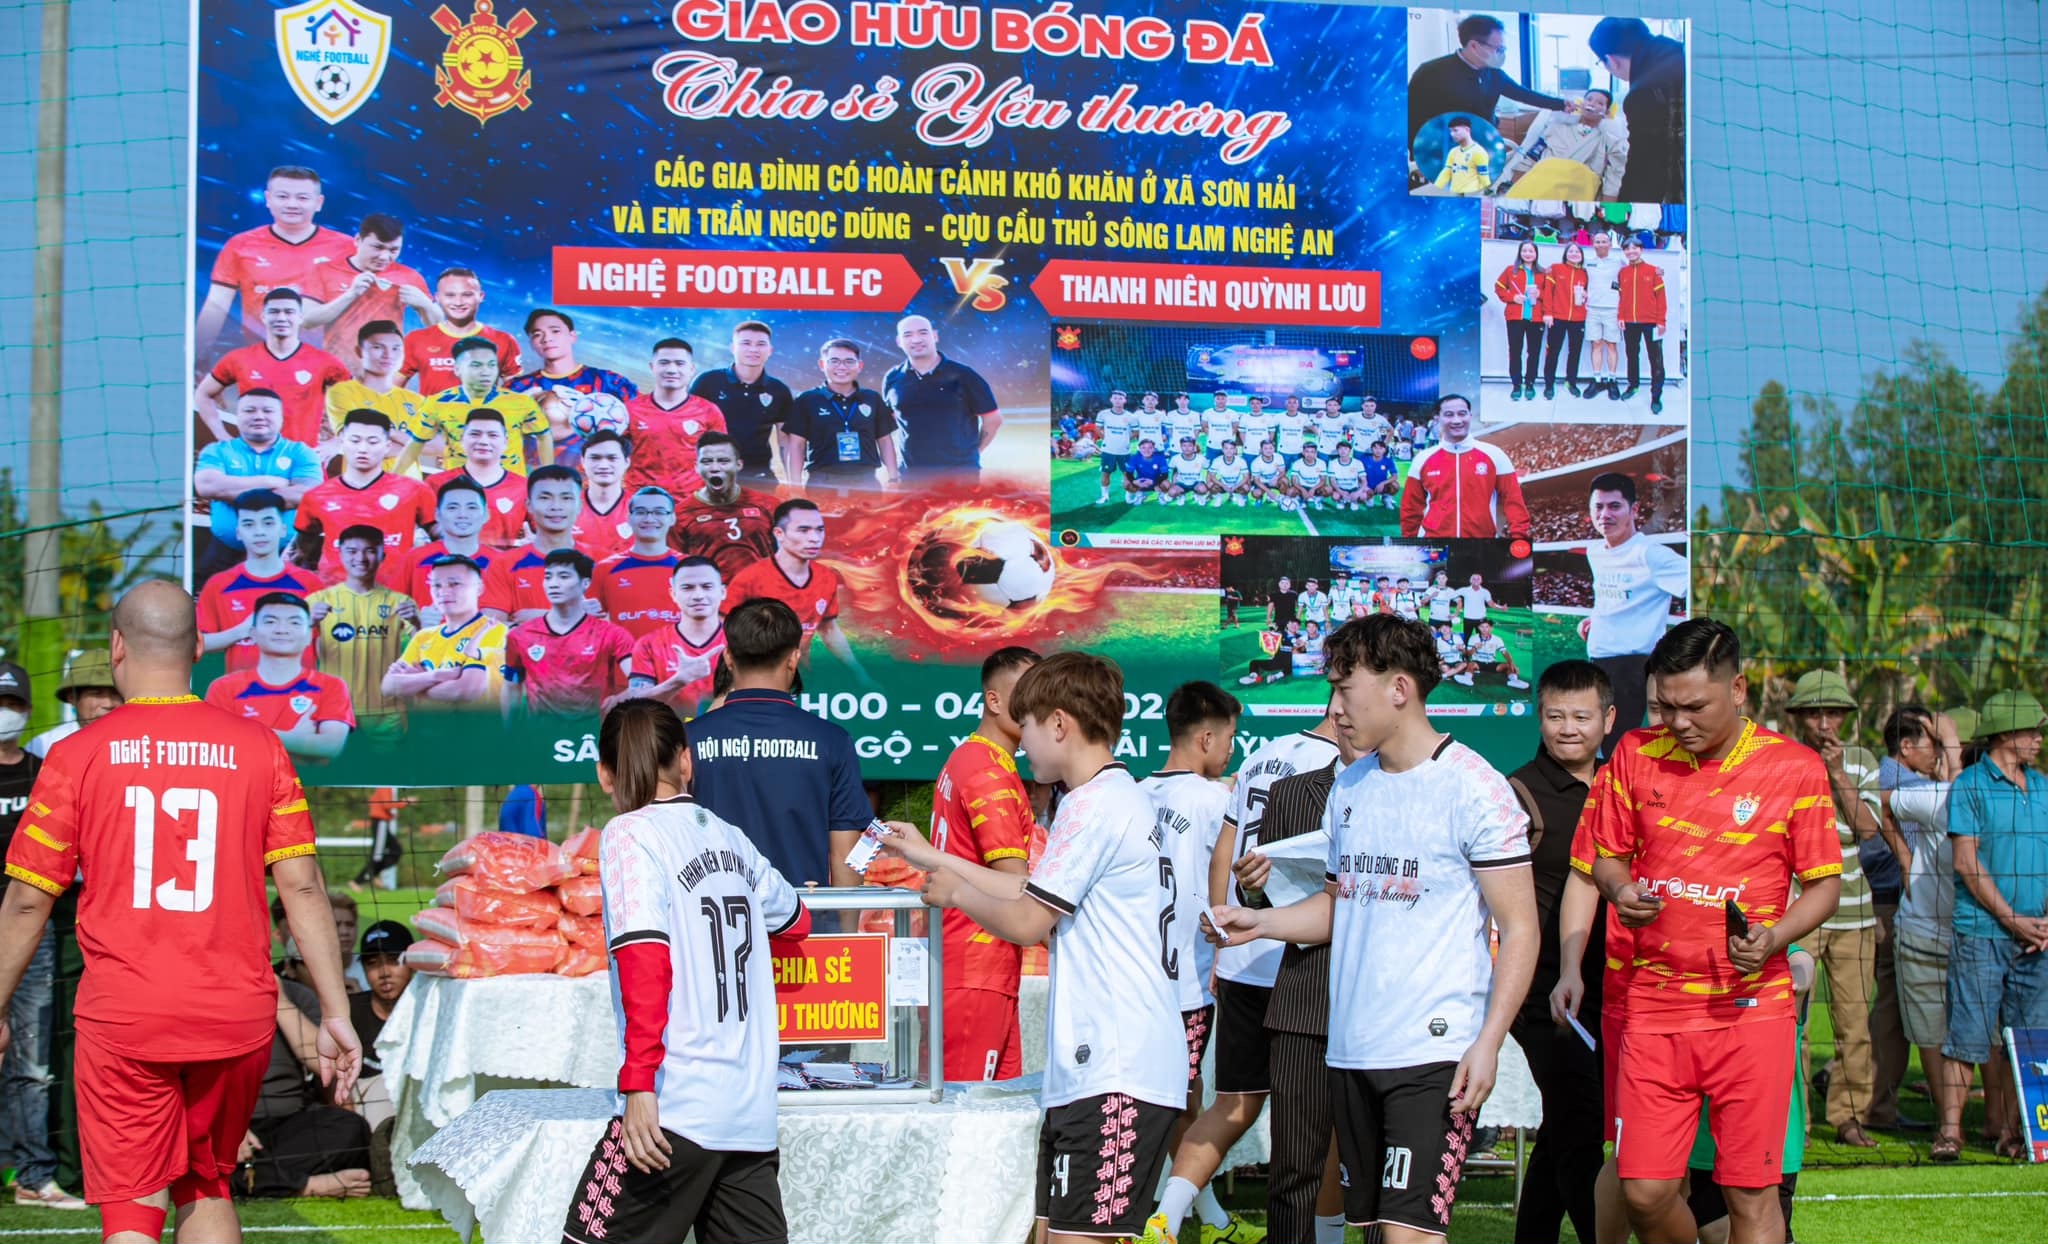 Vũ Thị Hoa cùng Nghệ Football FC đá giao hữu từ thiện ở xã Sơn Hải,  huyện Quỳnh Lưu (tỉnh Nghệ An)